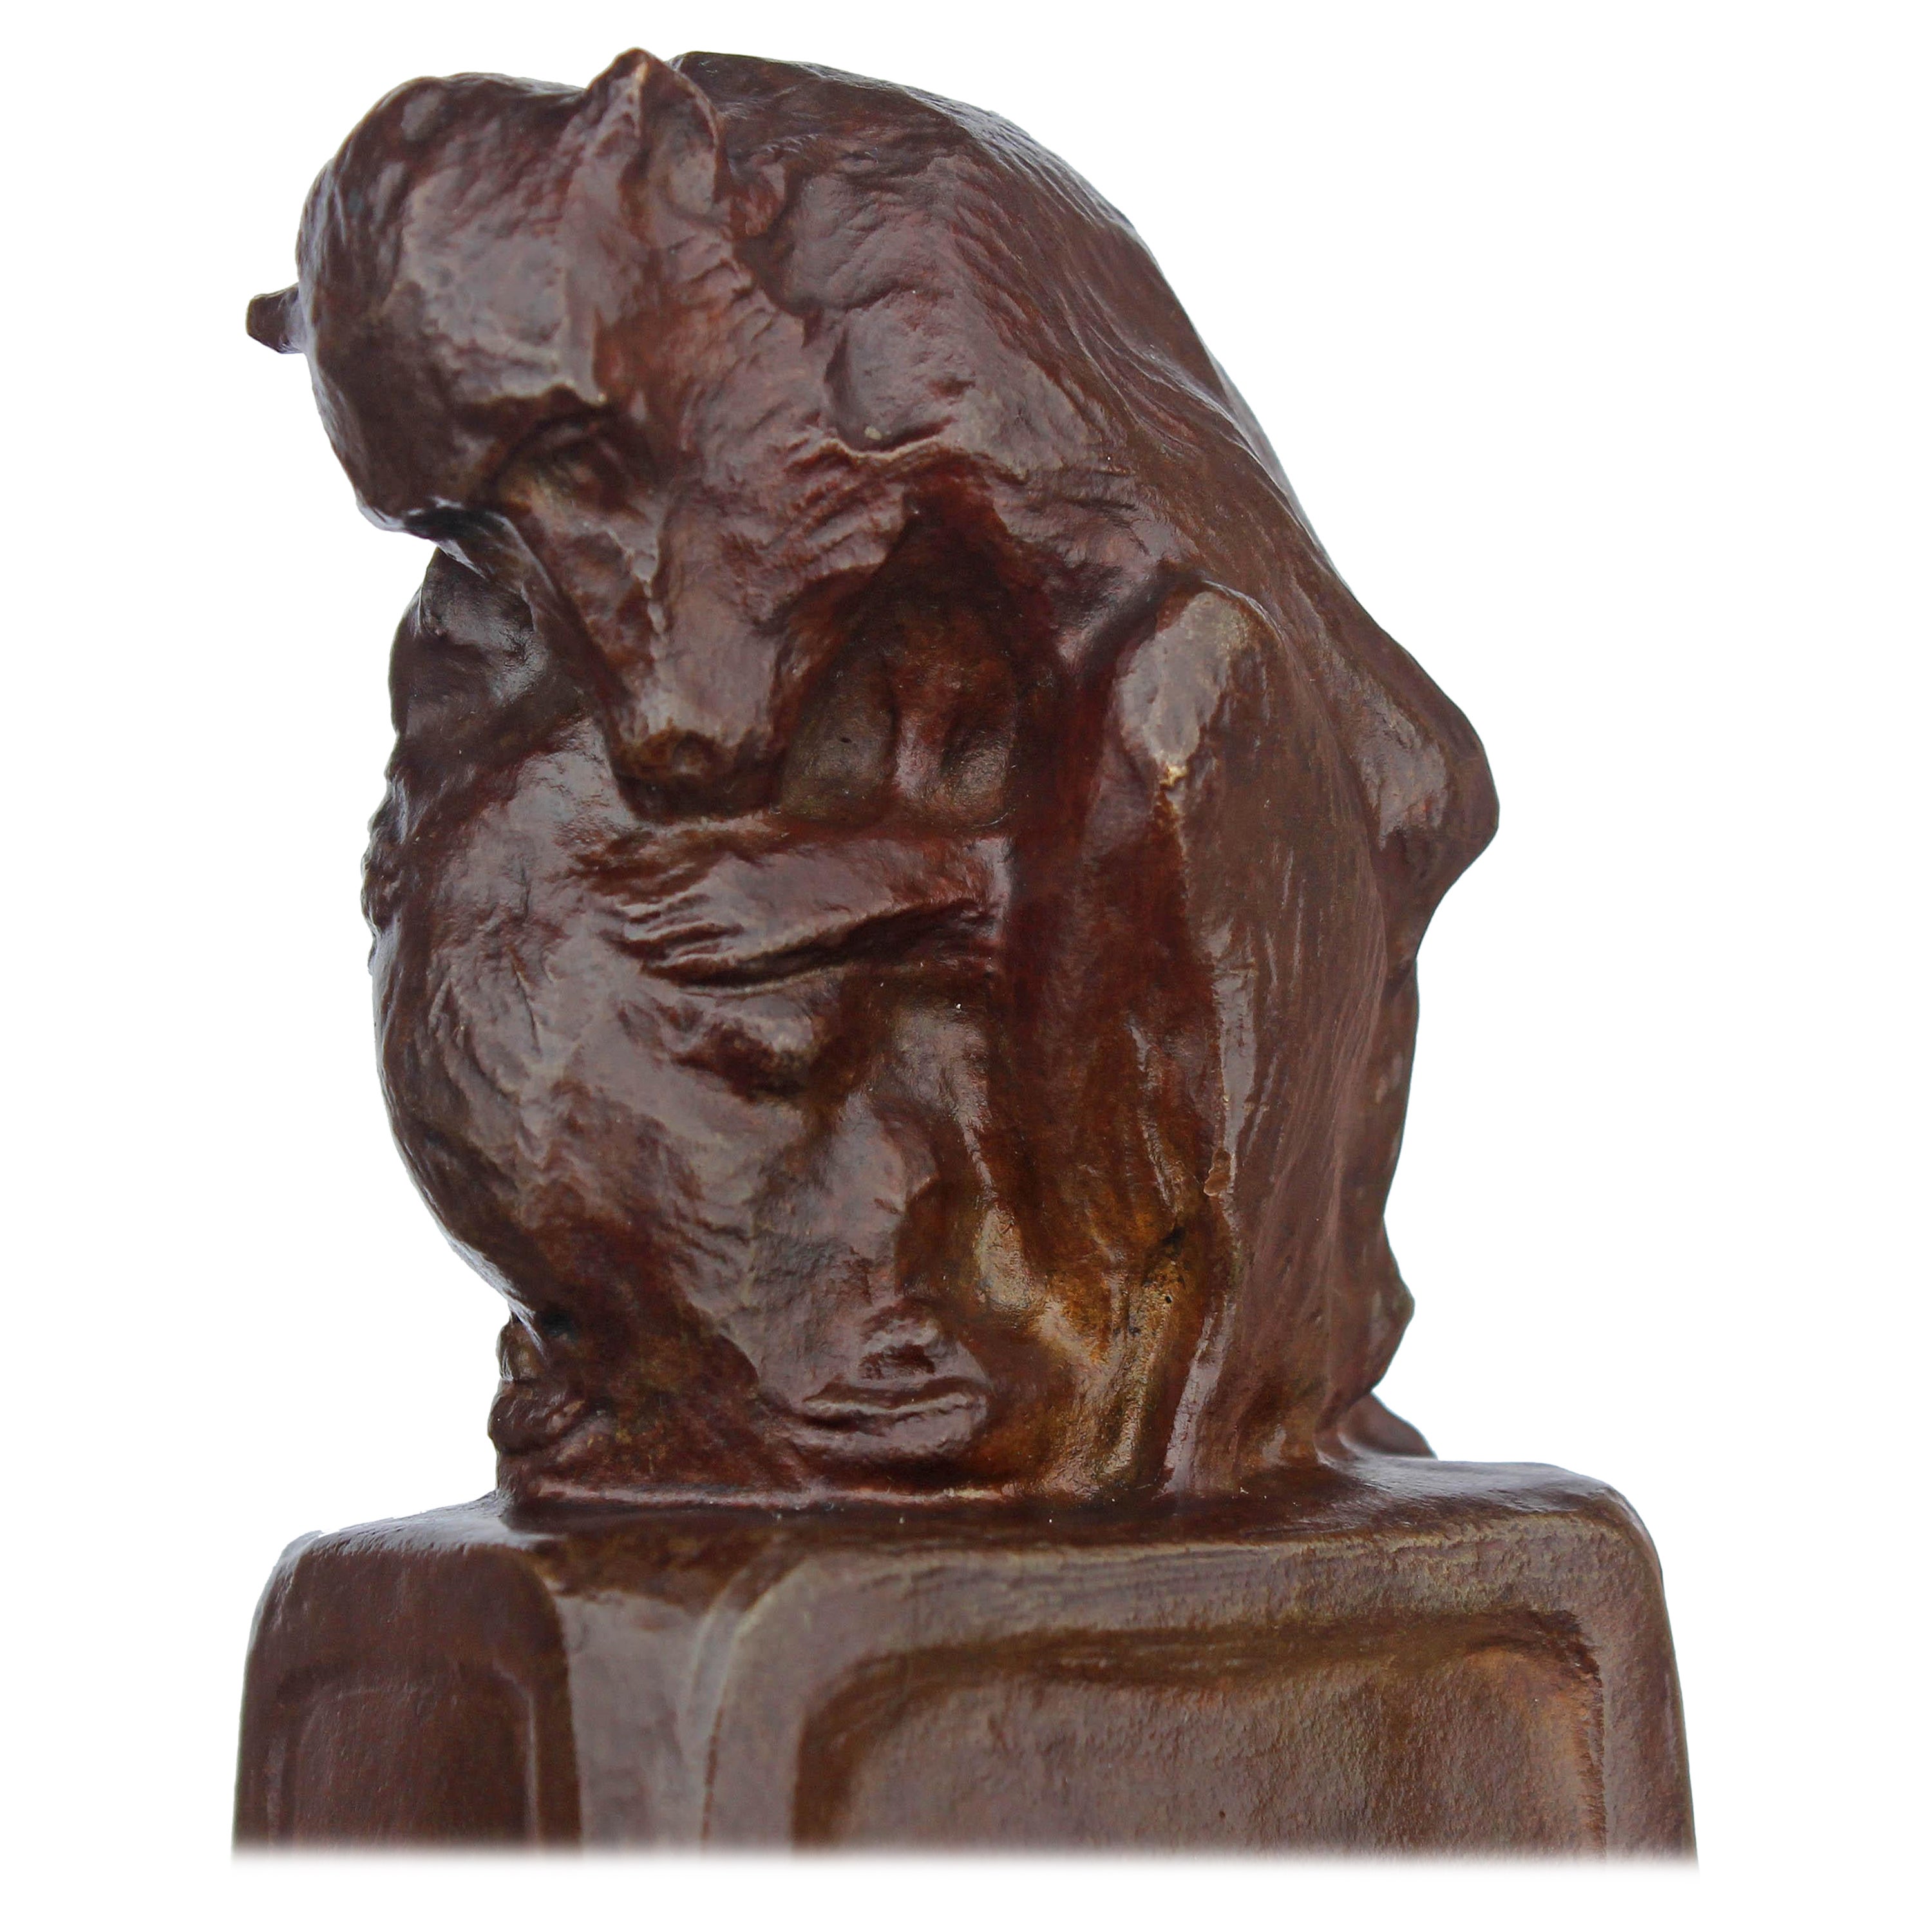 "Mutter und Kind", eine impressionistische Bronzeskulptur von Pavianen der amerikanischen Bildhauerin Blanca Will (1881-1978), datiert 1912. Werke von Will sind selten.
Blanca Will stellte in der National Academy of Design, der Pennsylvania Academy